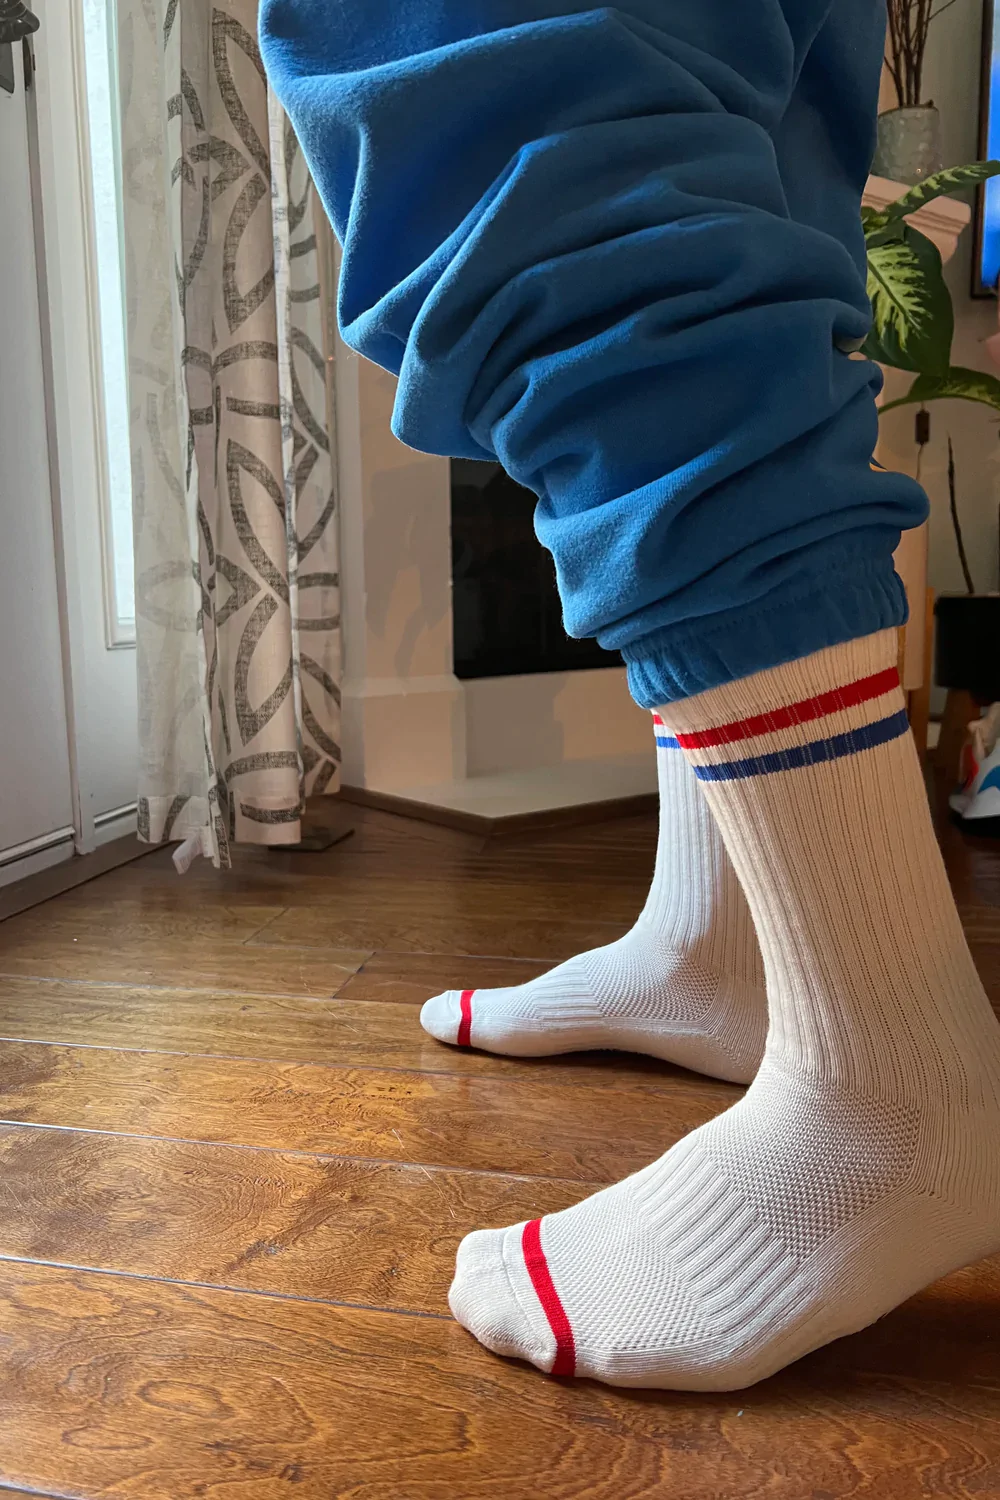 Product Image for Extended Men's Boyfriend Socks, Milk